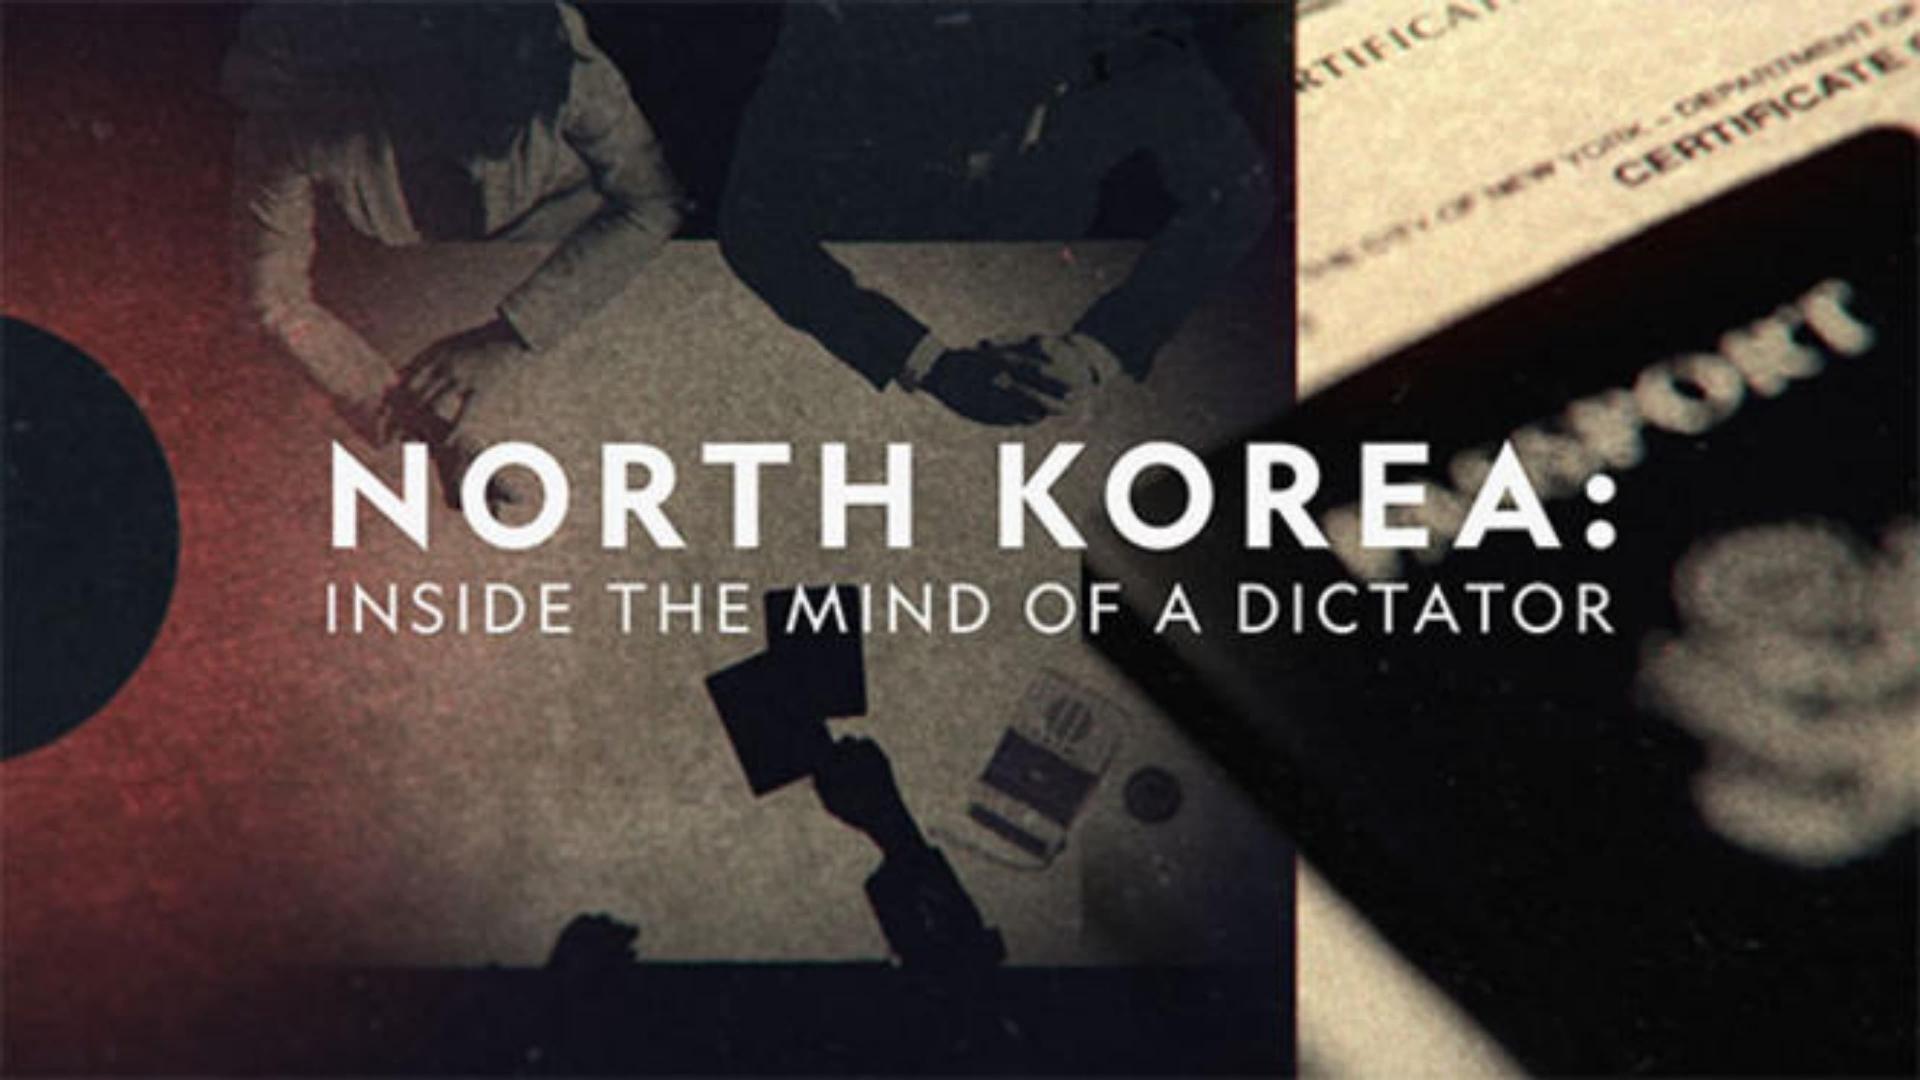 ჩრდილოეთ კორეა: დიქტატორის გონებაში / North Korea: Inside the Mind of a Dictator